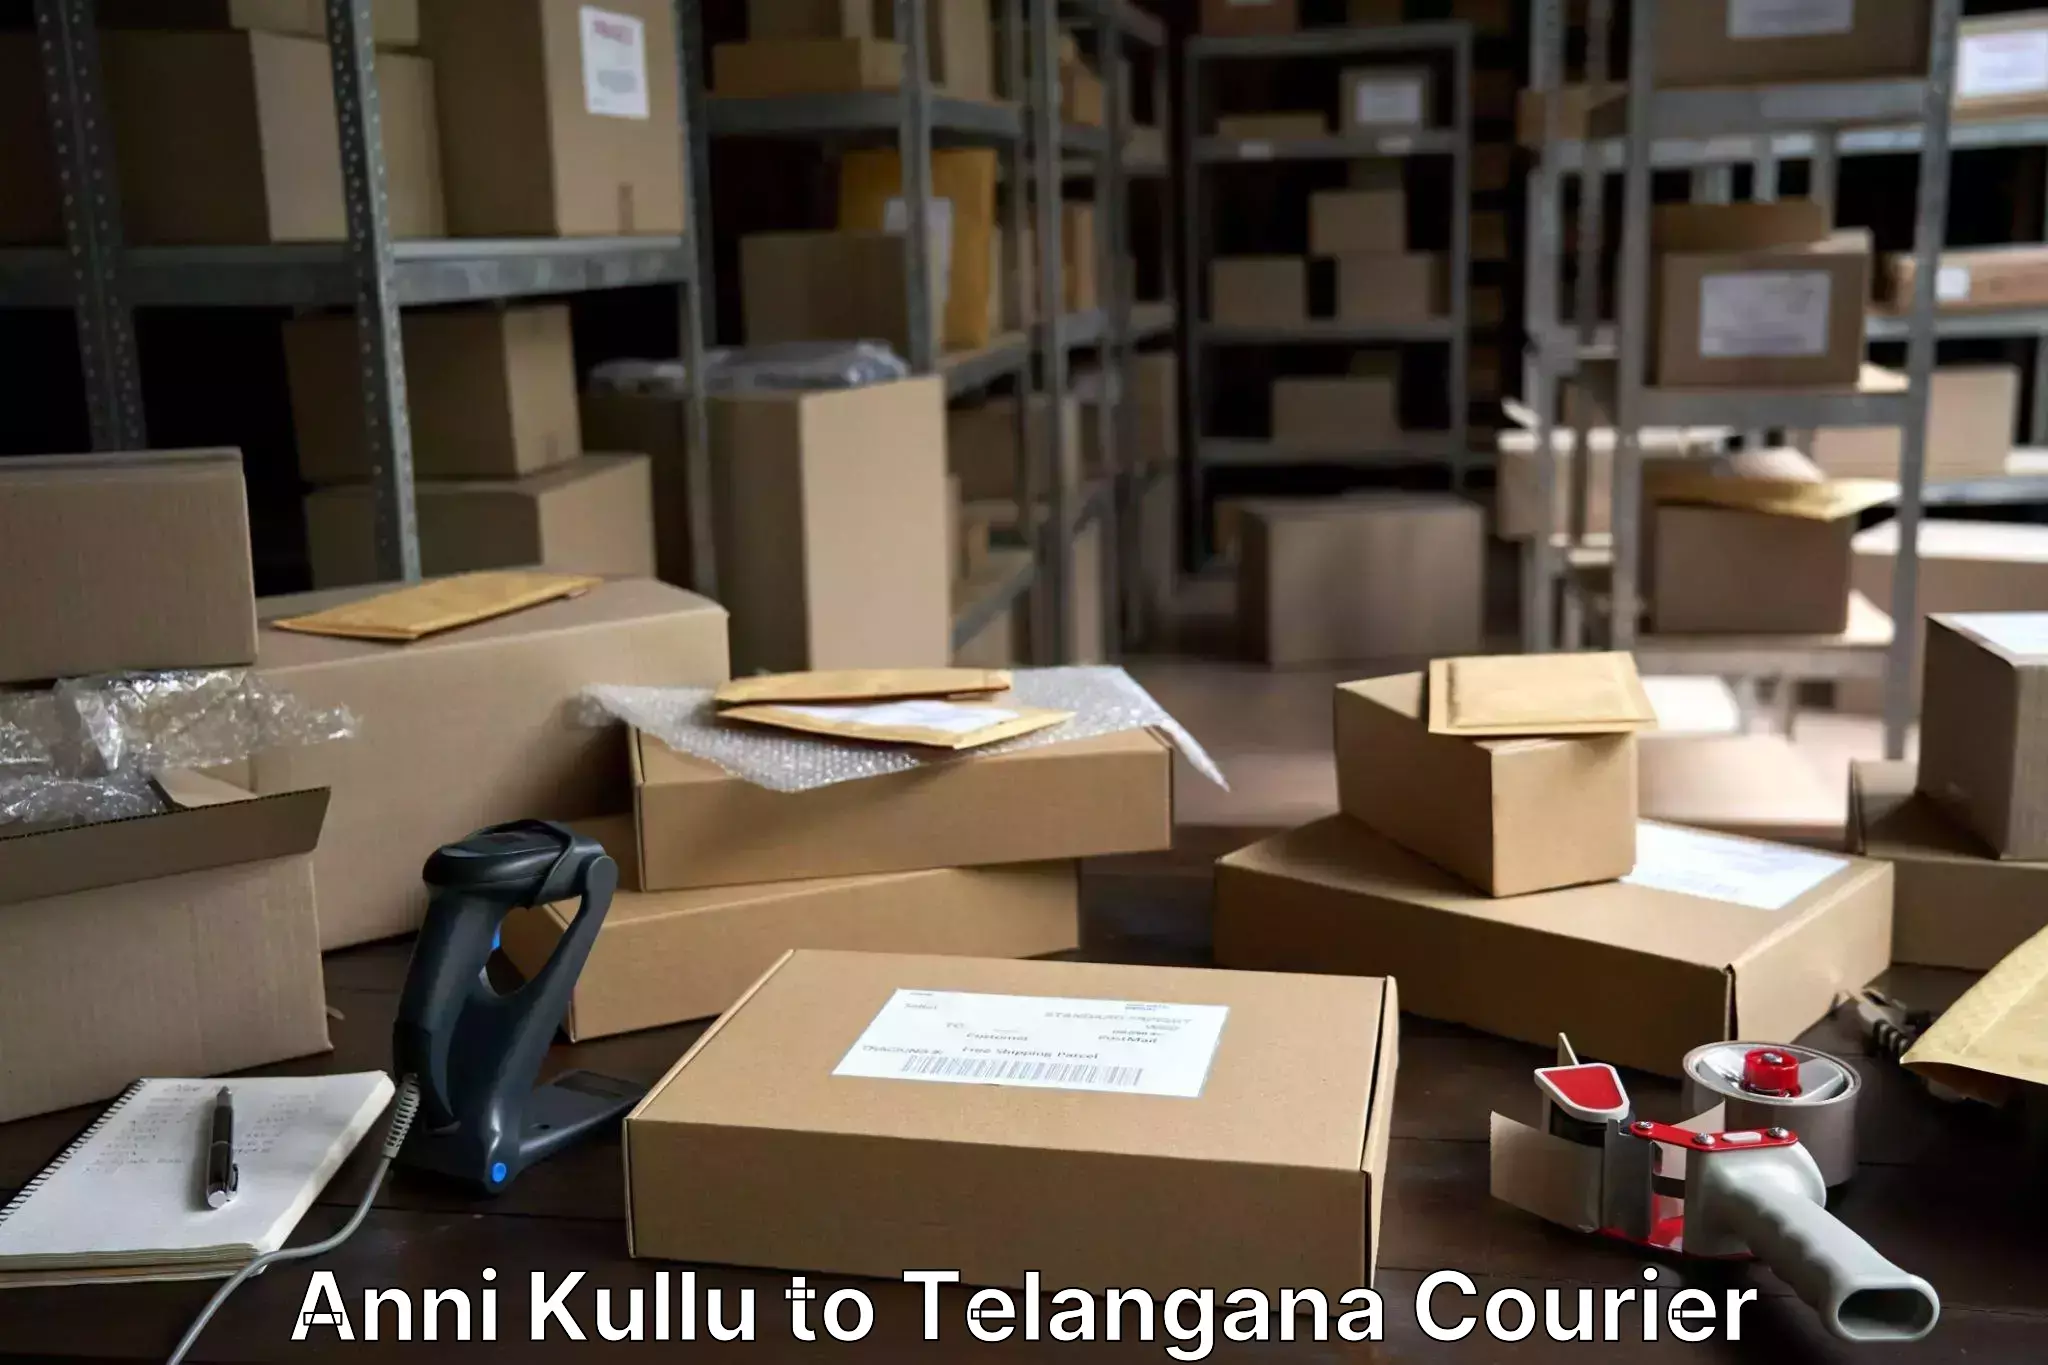 Electronic items luggage shipping Anni Kullu to Gangadhara